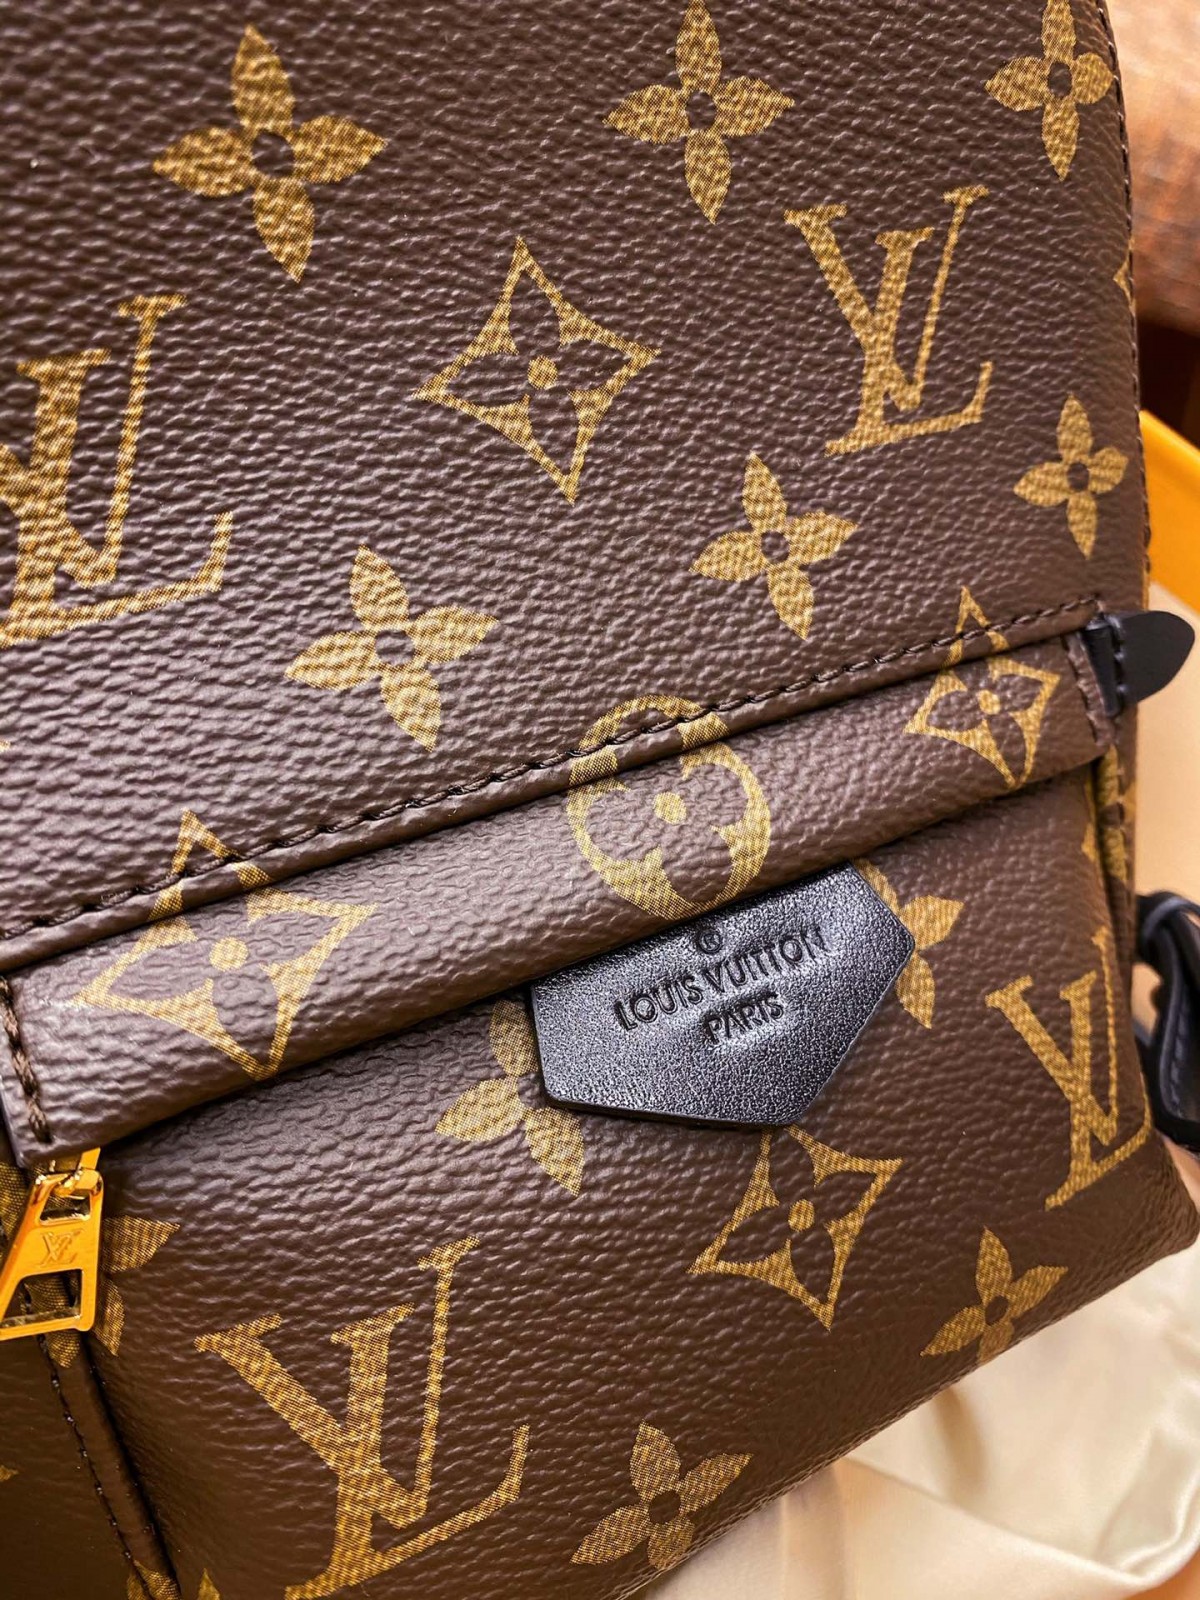 Louis Vuitton somu mugursomas replikas apskati (atjaunināts 2022. gadā) — labākās kvalitātes viltotās Louis Vuitton somas tiešsaistes veikals, dizainera somas kopija ru